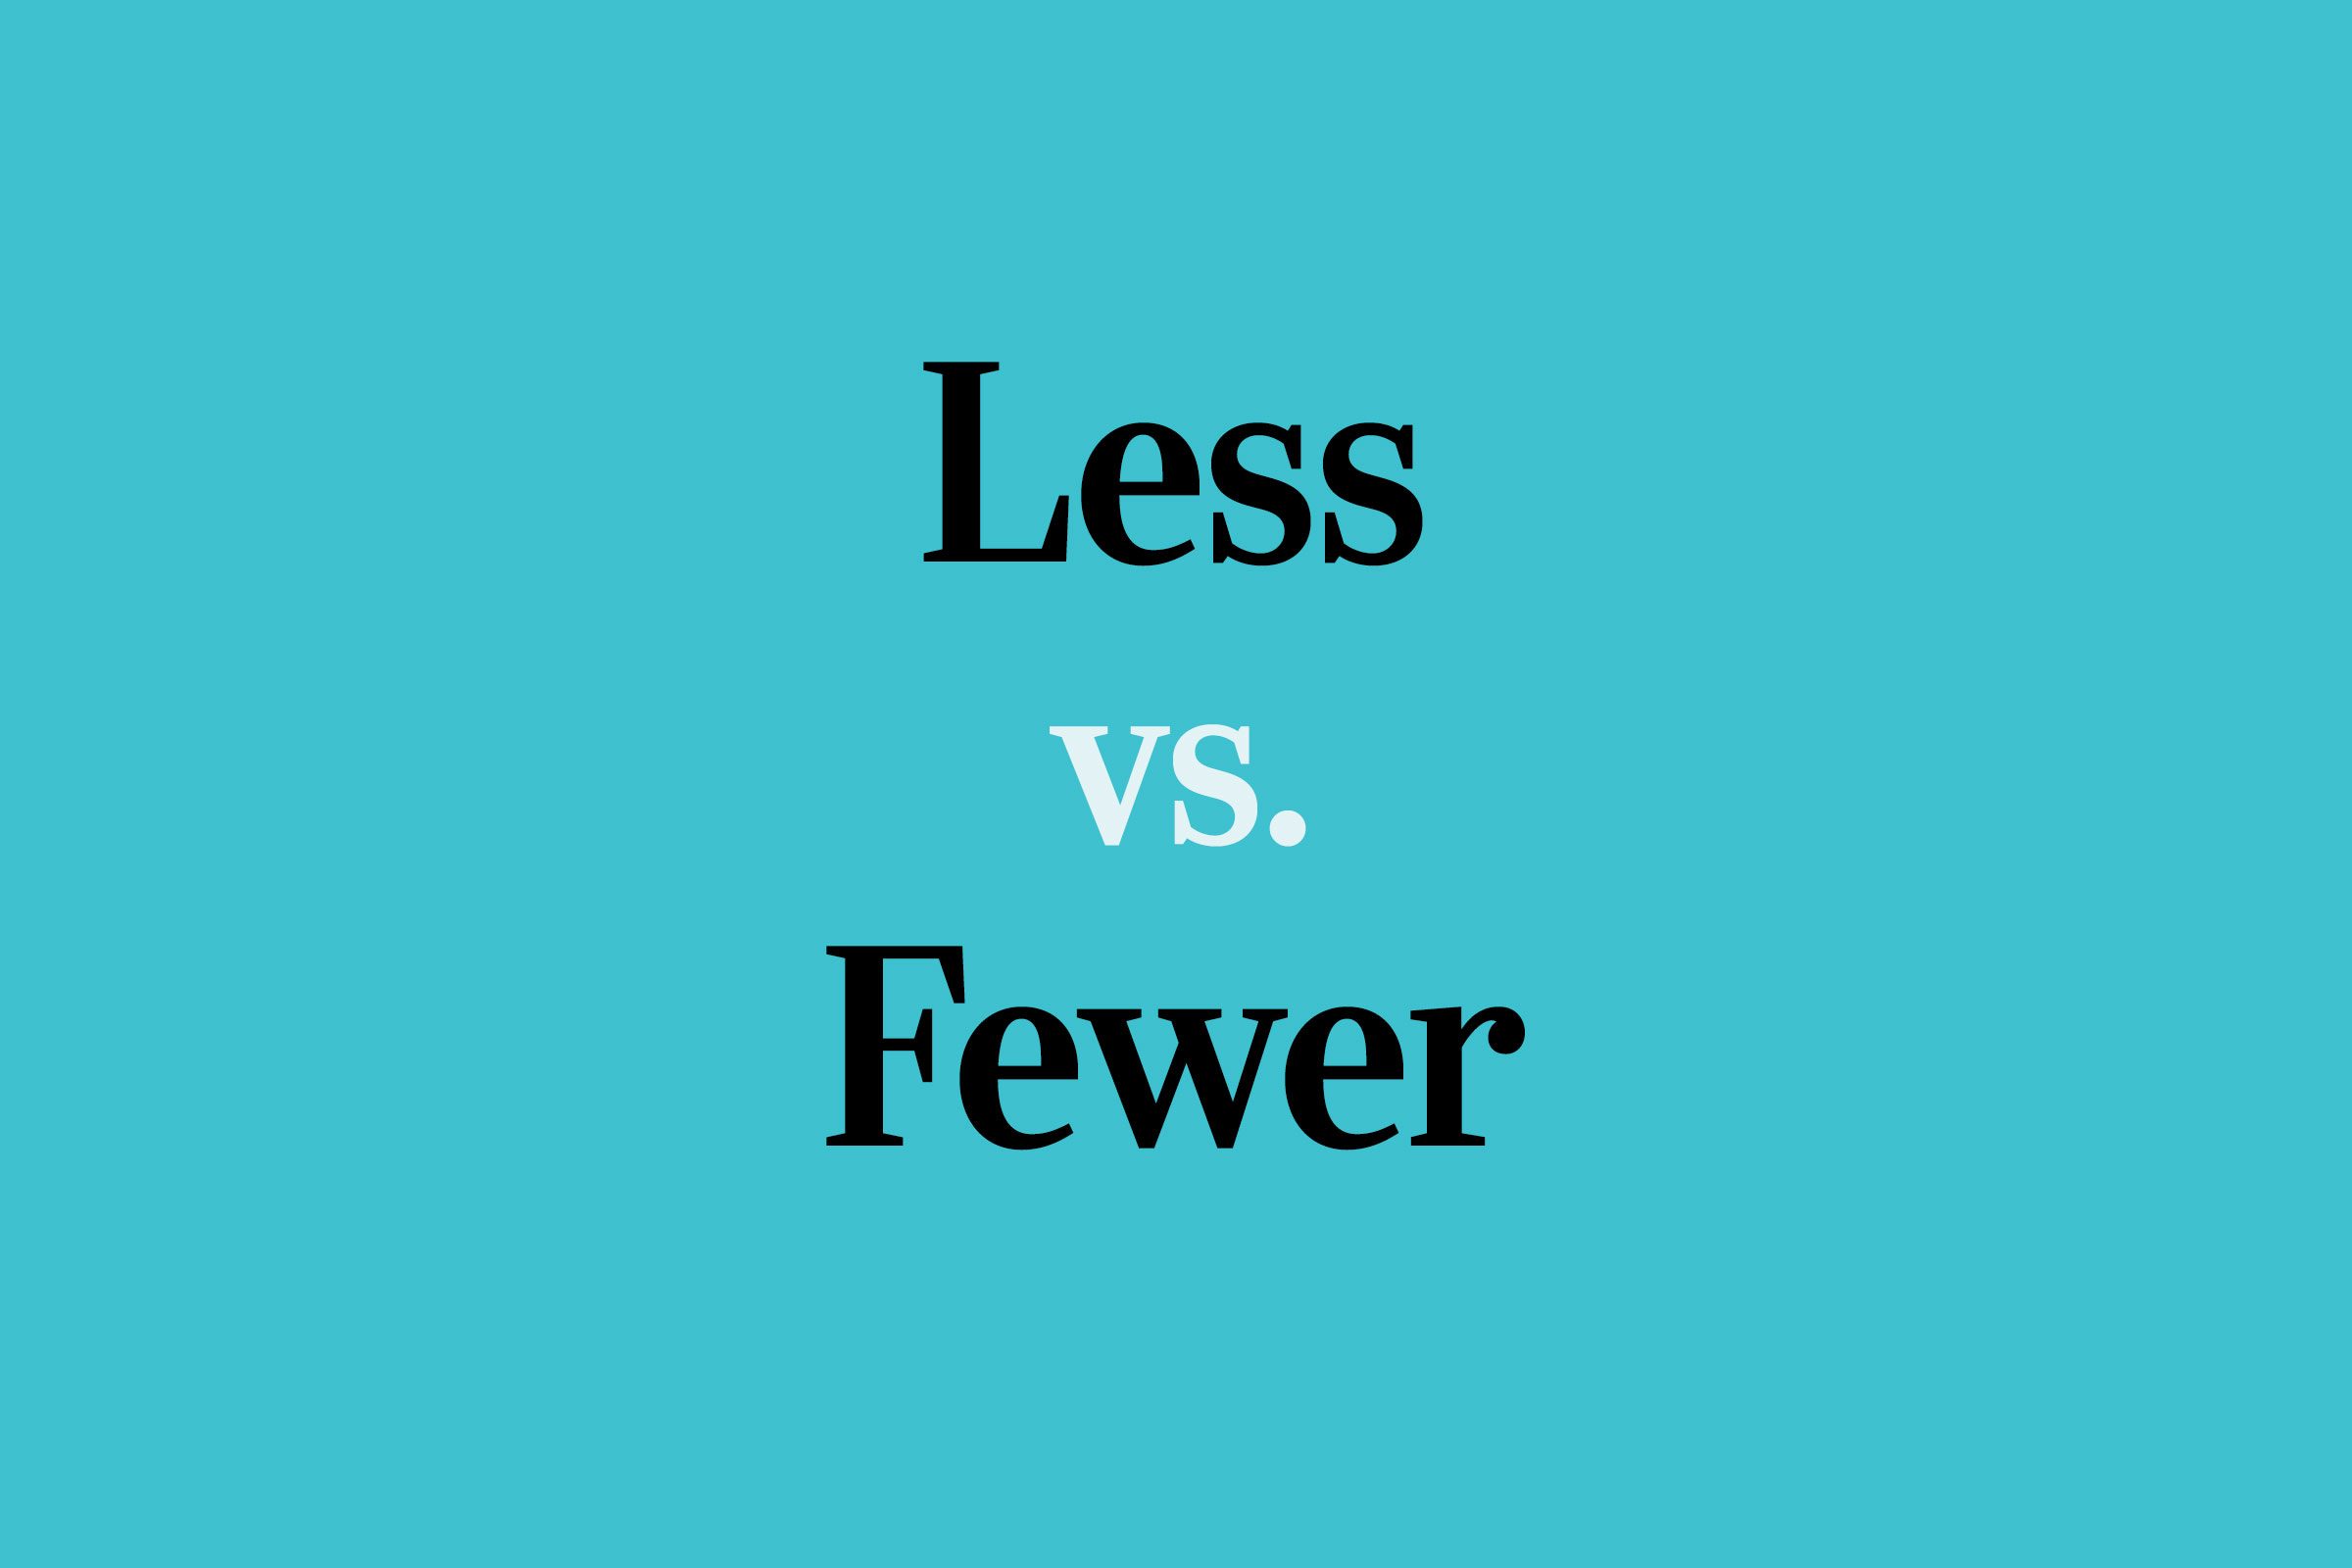 Less vs. Fewer